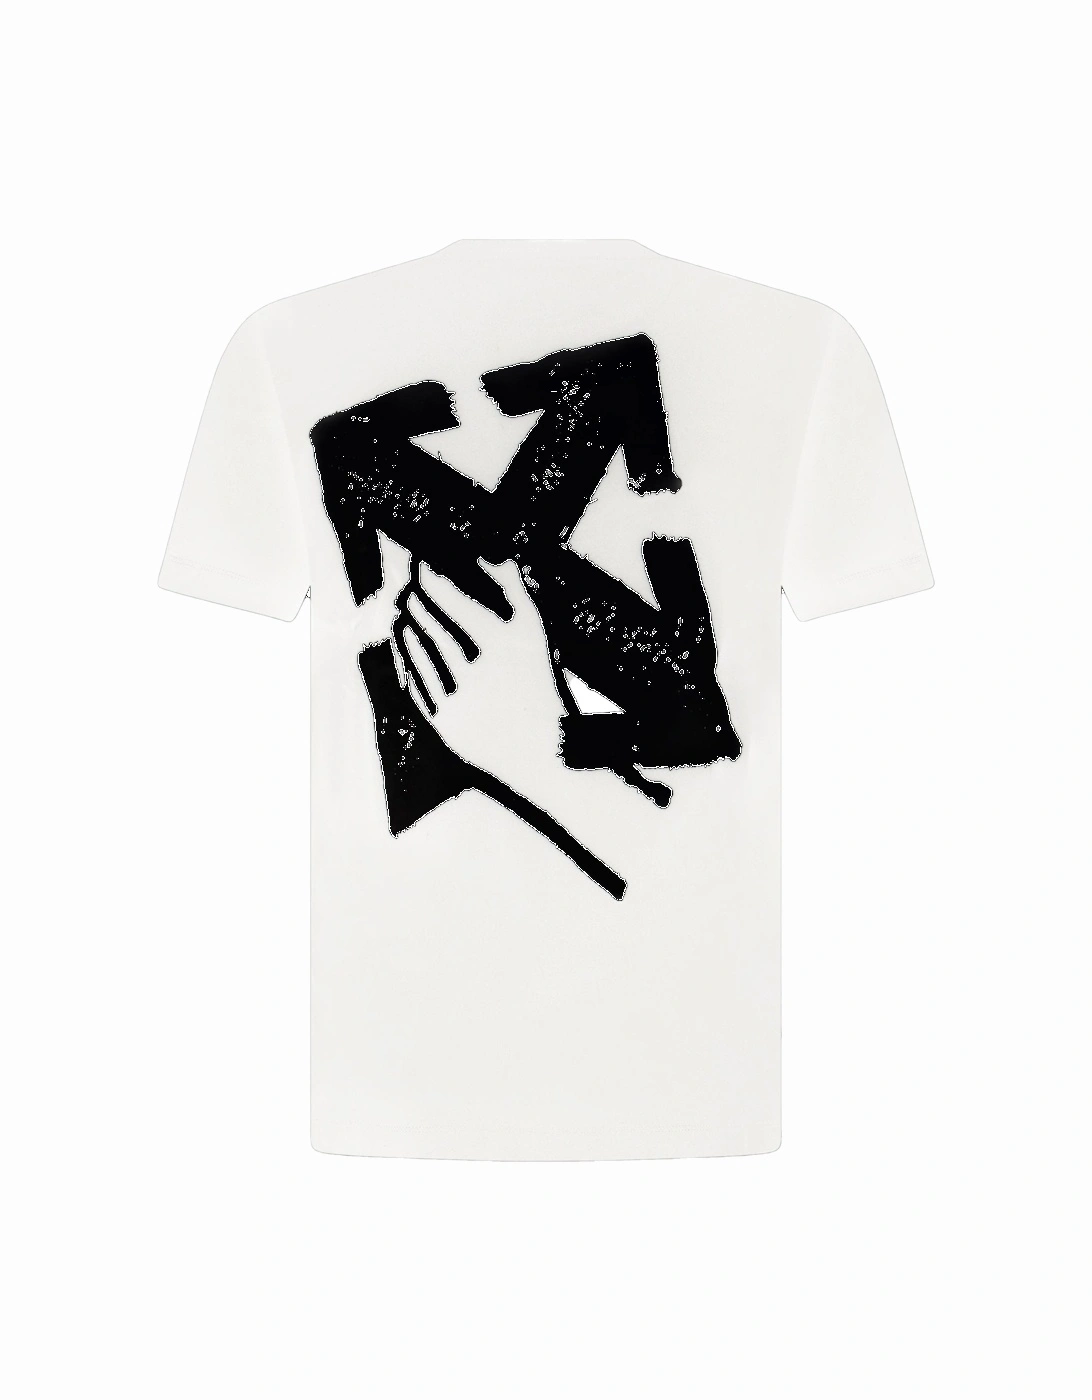 Hand Arrow Design T-shirt White, 3 of 2